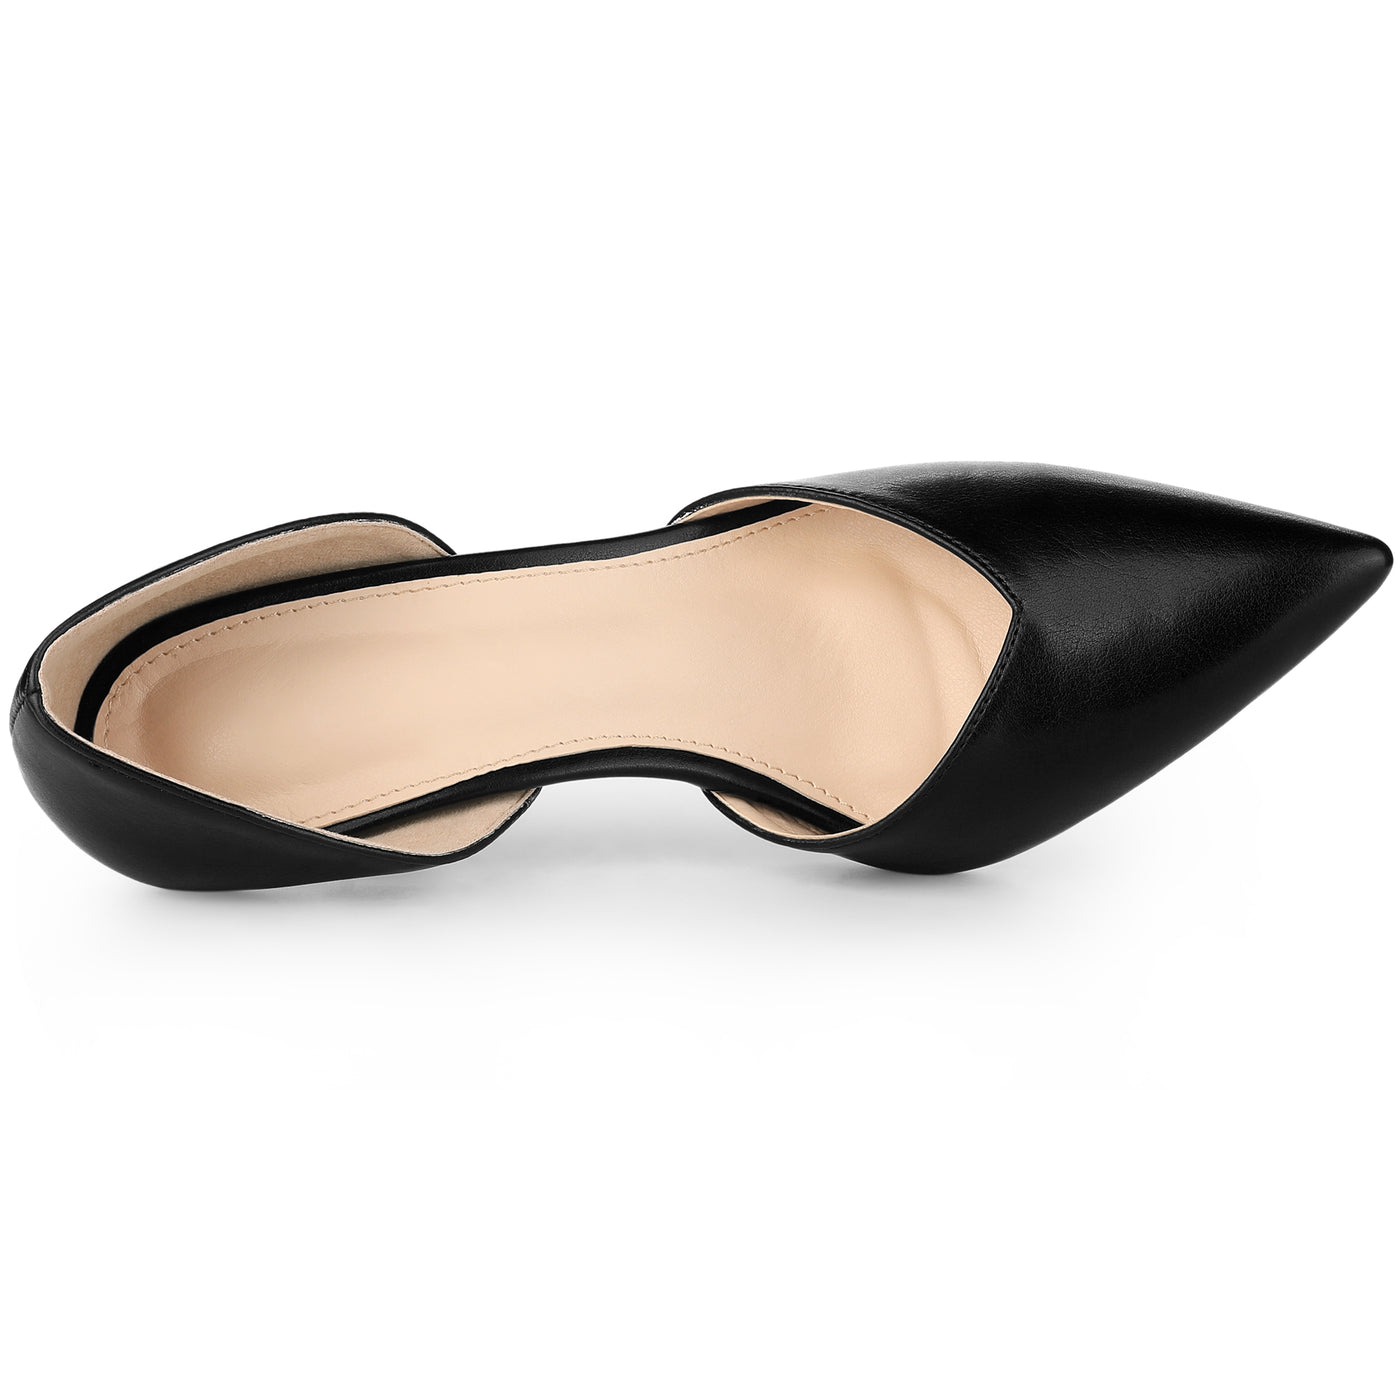 Allegra K Women's Pointy Toe Slip on Stiletto Heel Pump Sandals